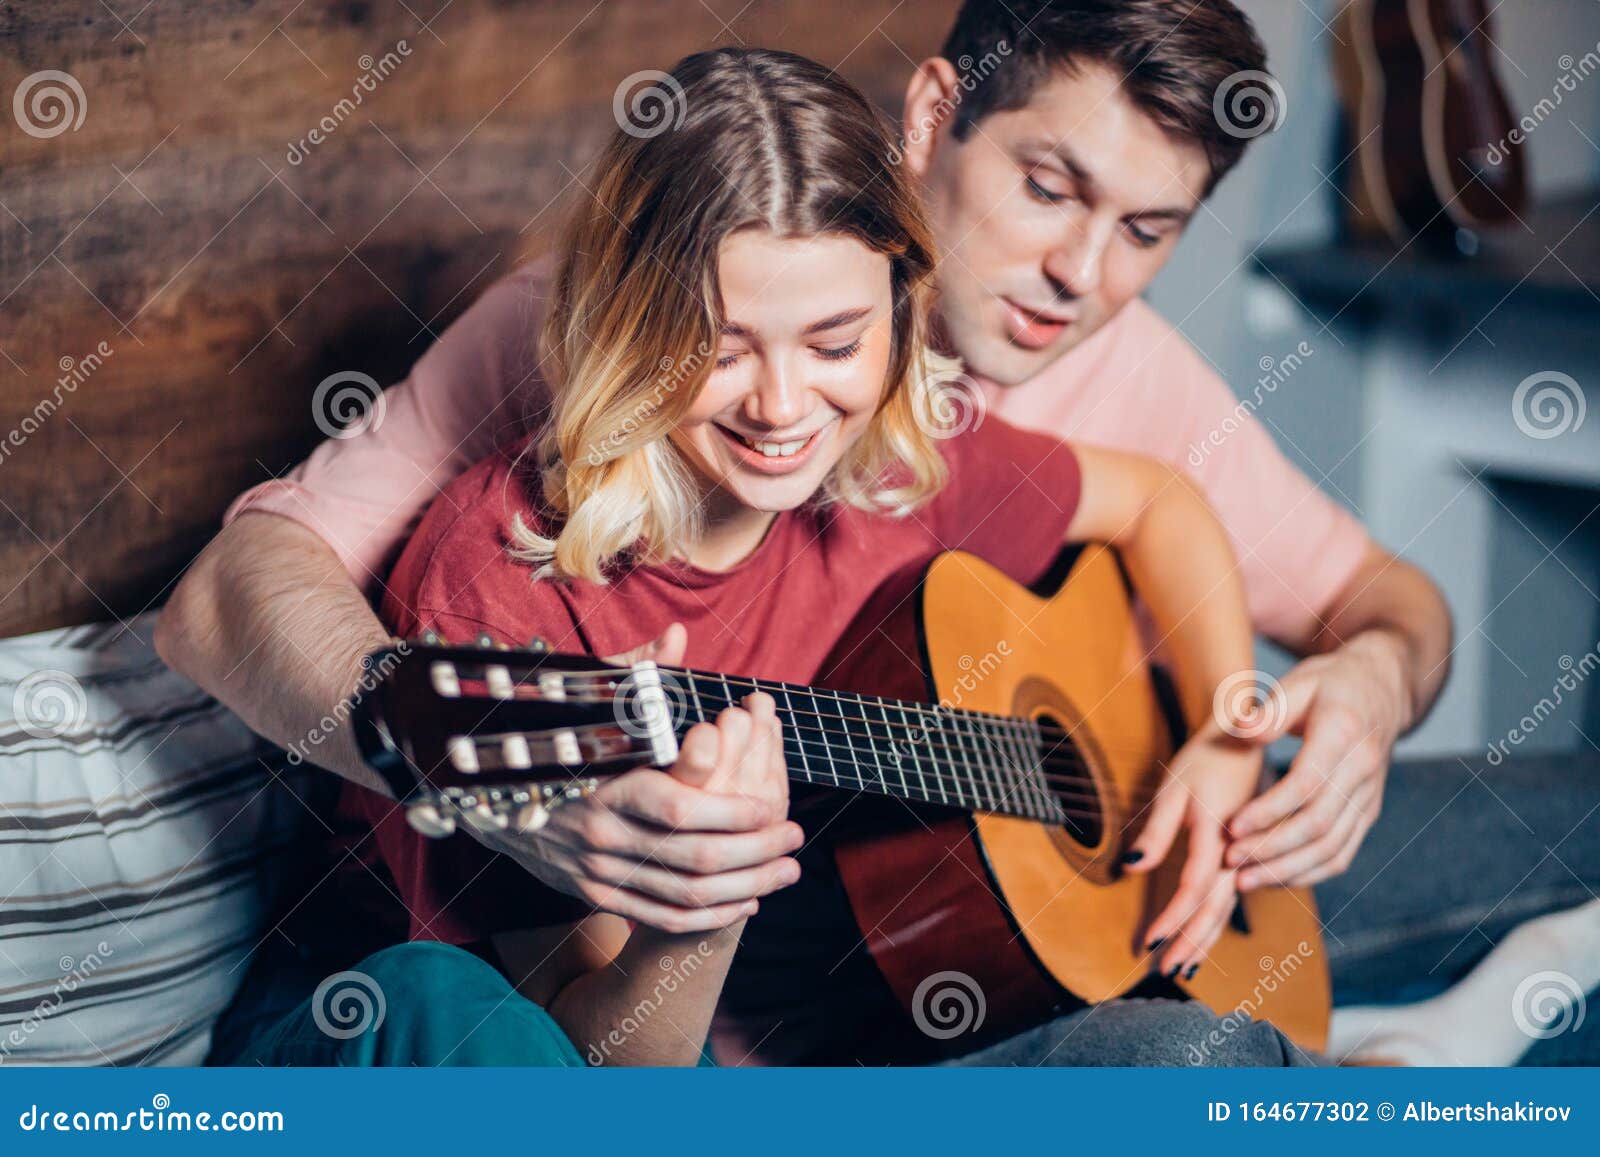 https://thumbs.dreamstime.com/z/bonita-pareja-descansando-en-casa-y-tocando-guitarra-joven-novio-ense%C3%B1ando-su-novia-tocar-la-encantadora-usando-ropa-informal-164677302.jpg